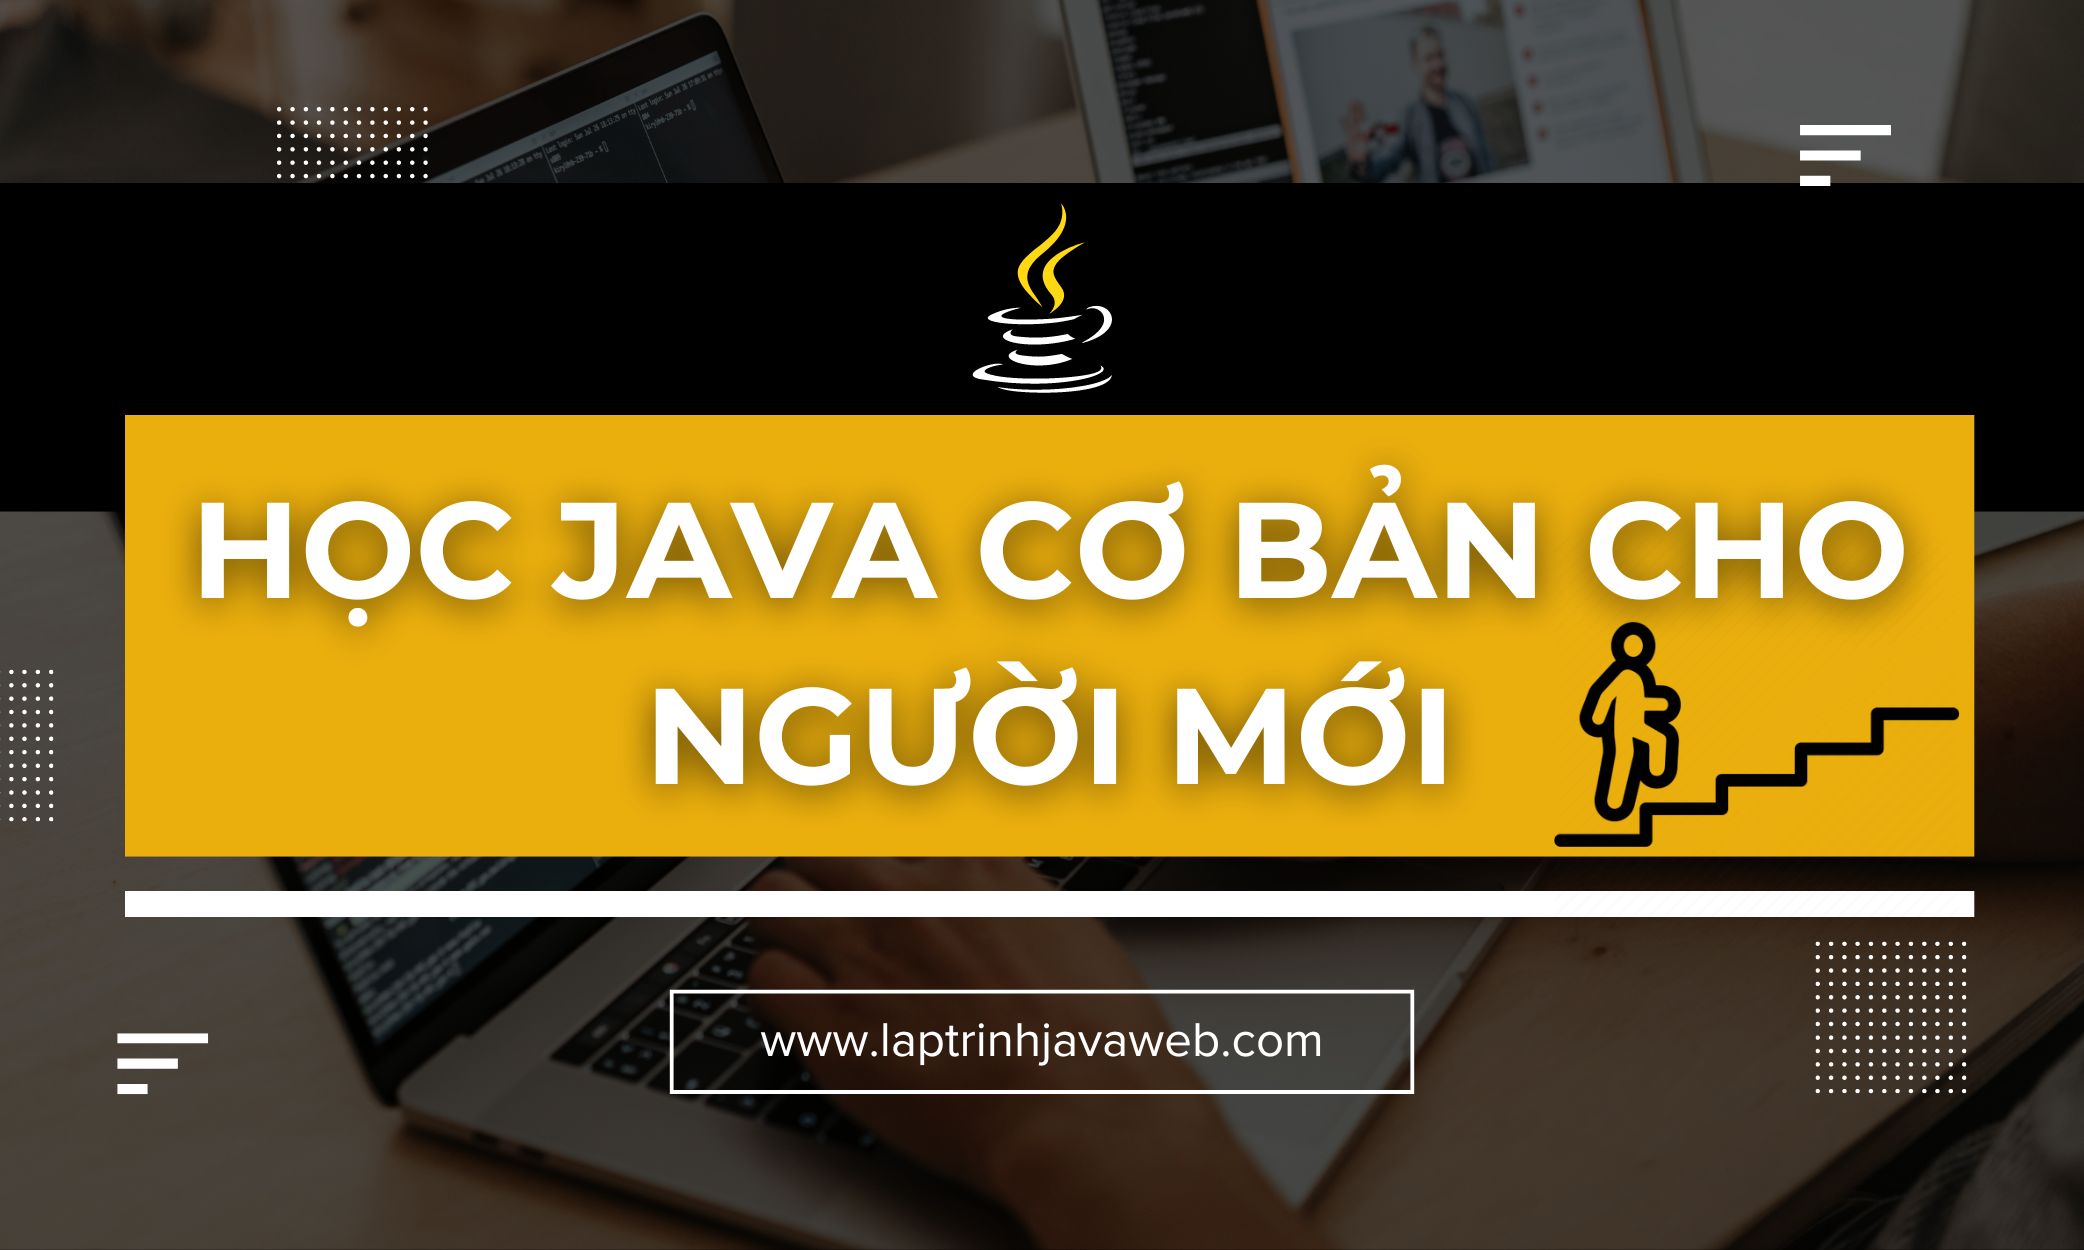 Học Java cơ bản cho người mới